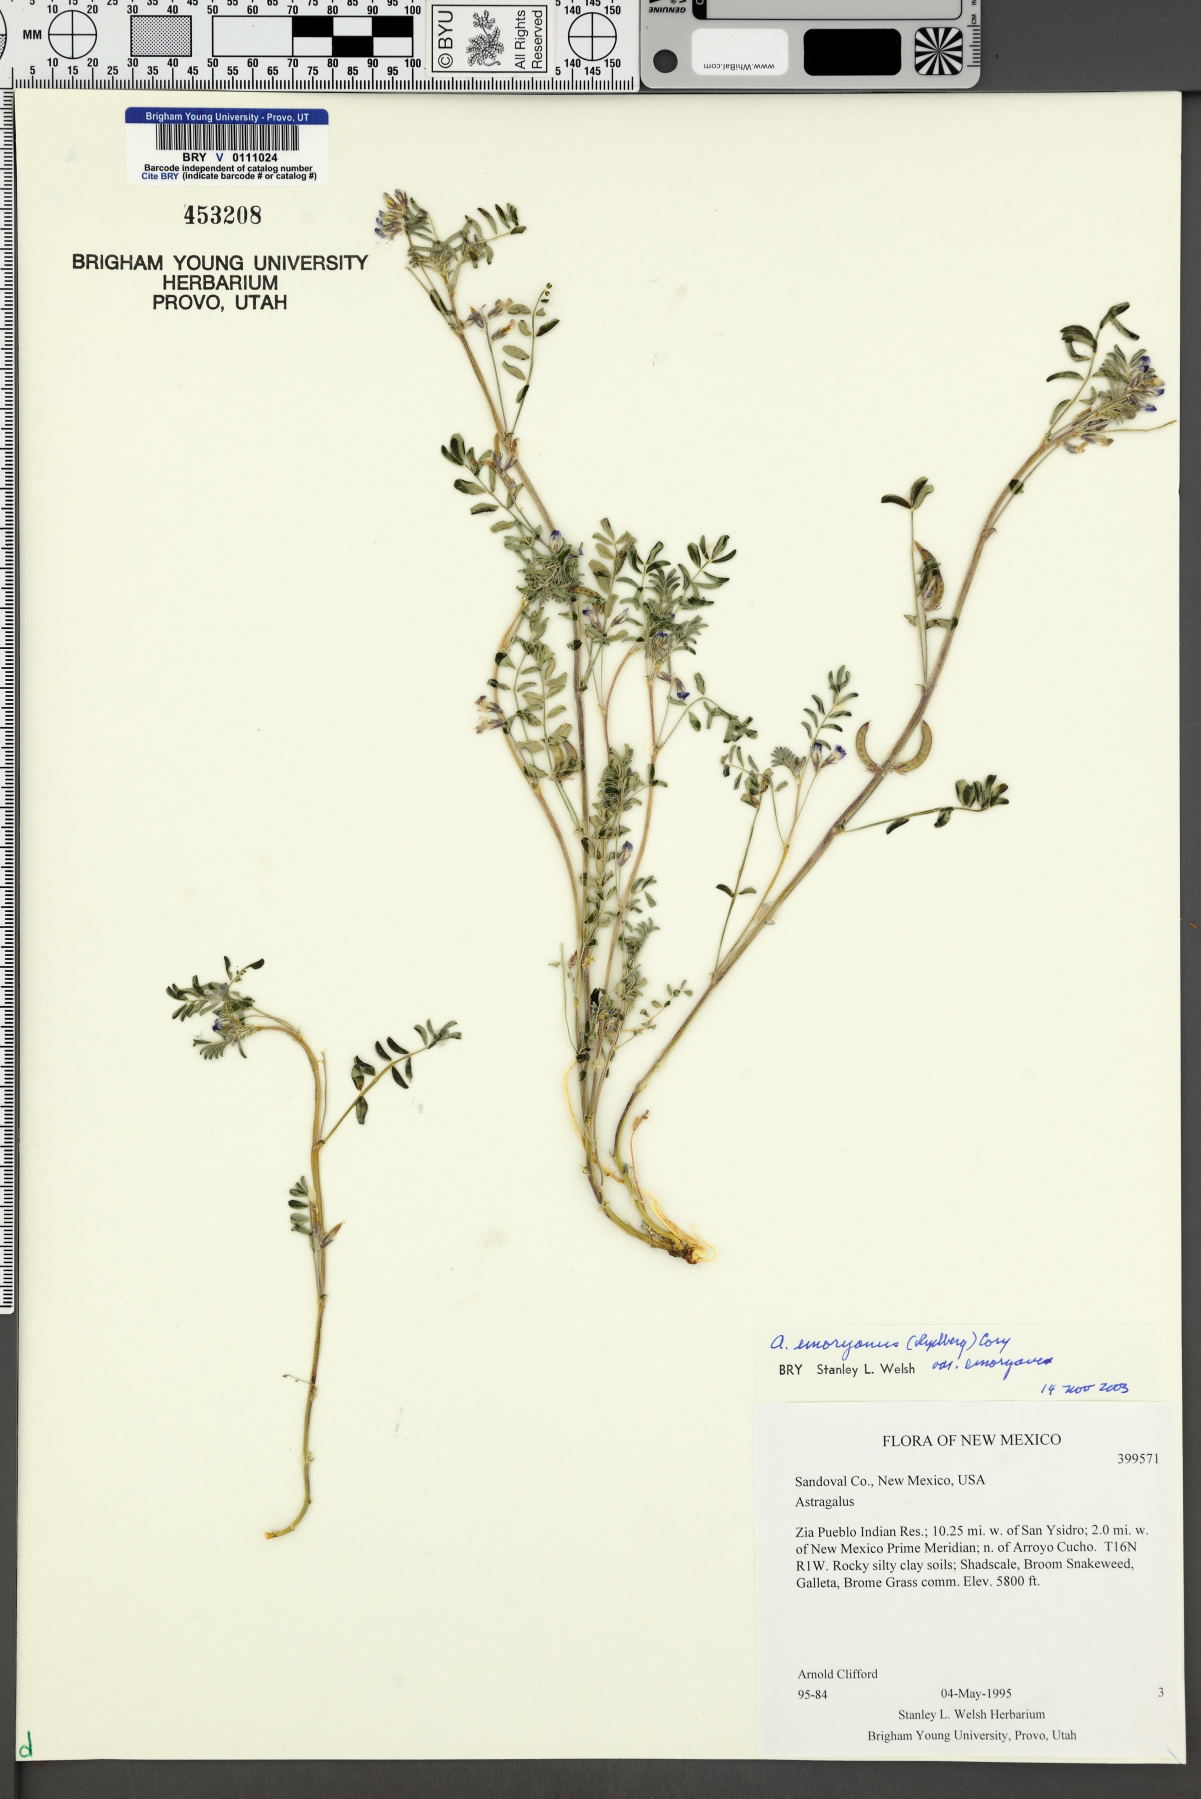 Astragalus emoryanus var. emoryanus image